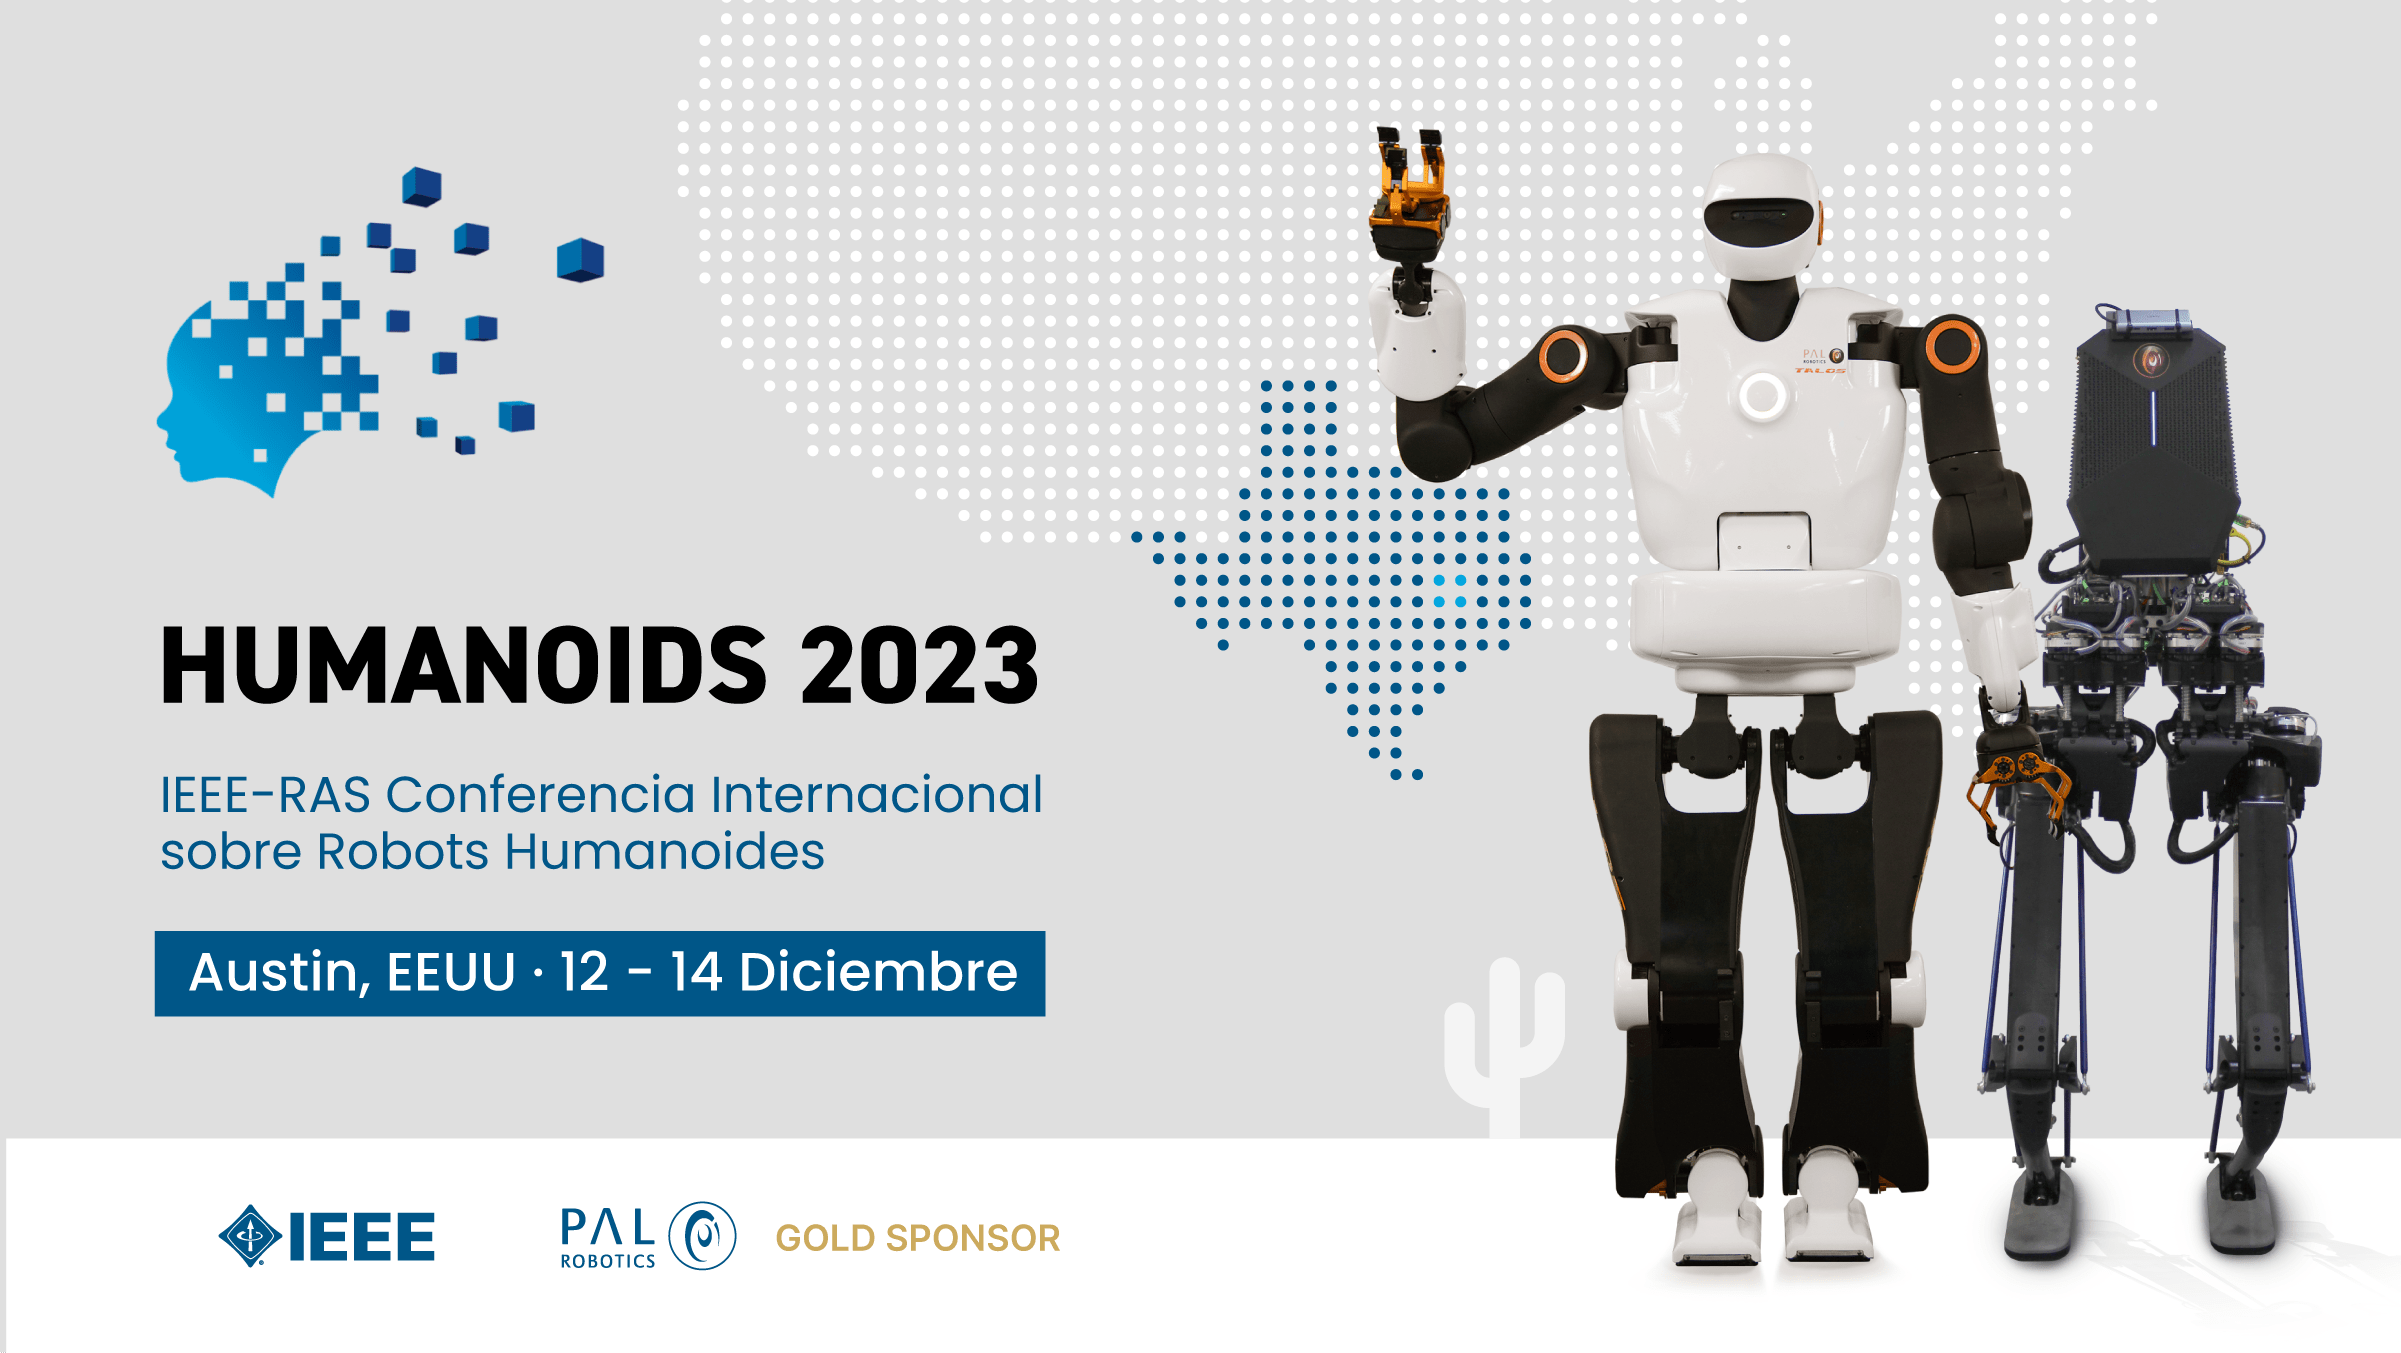 Robots humanoides TALOS y KANGAROO con información sobre la asistencia a la conferencia Humanoids 2023.